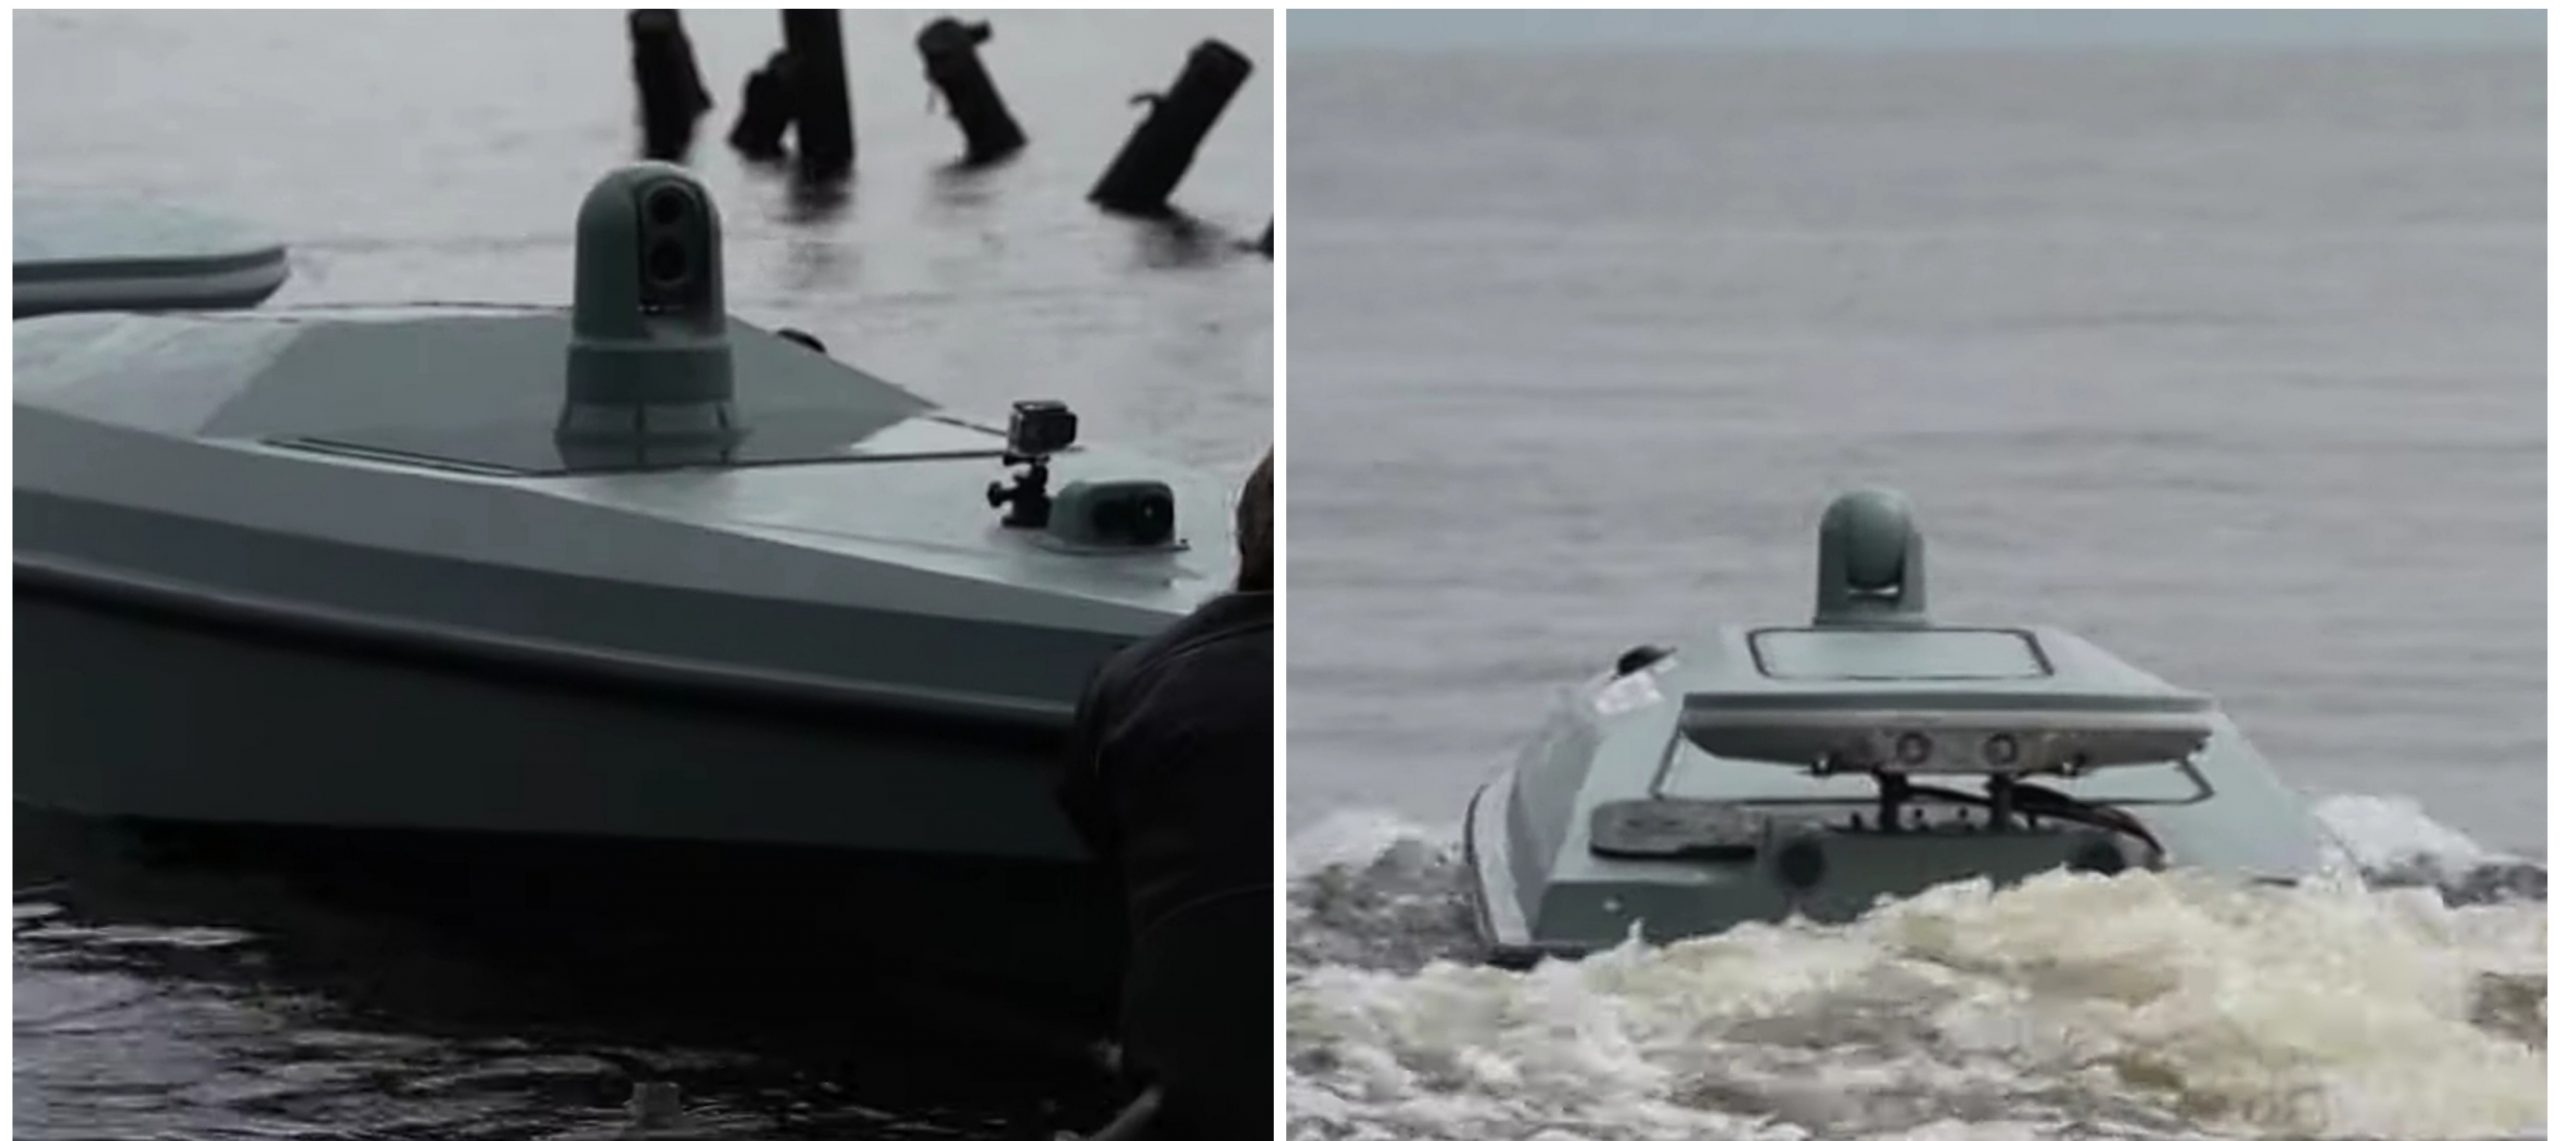 MAGURA naval drone discovered off the coast of Crimea - Militarnyi